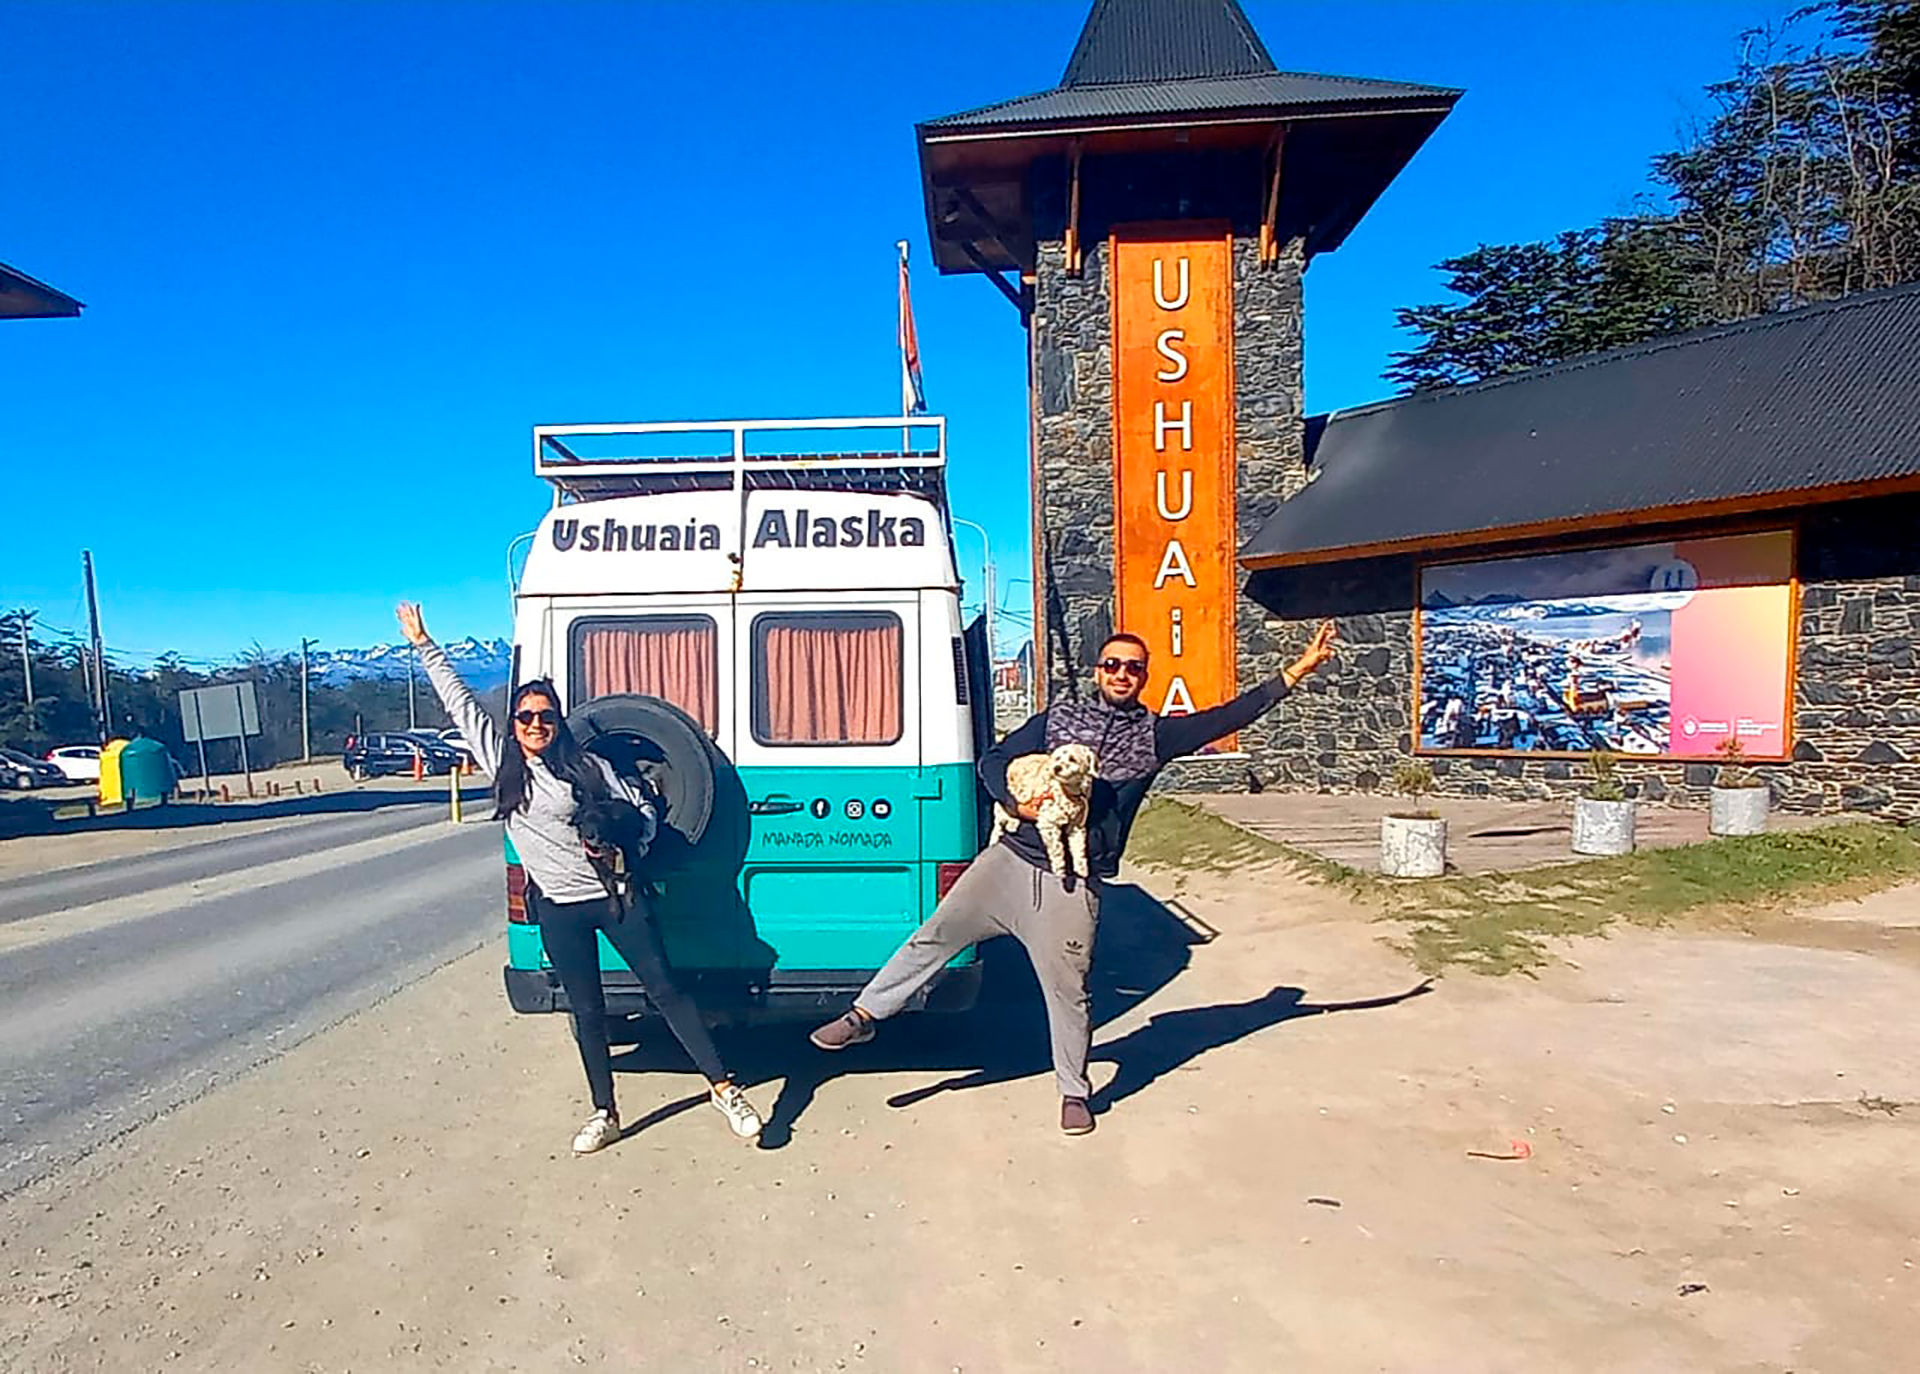 Llegar a Ushuaia les representó el primer objetivo cumplido. Queda emprender ruta camino a Alaska (@manadanomada_)